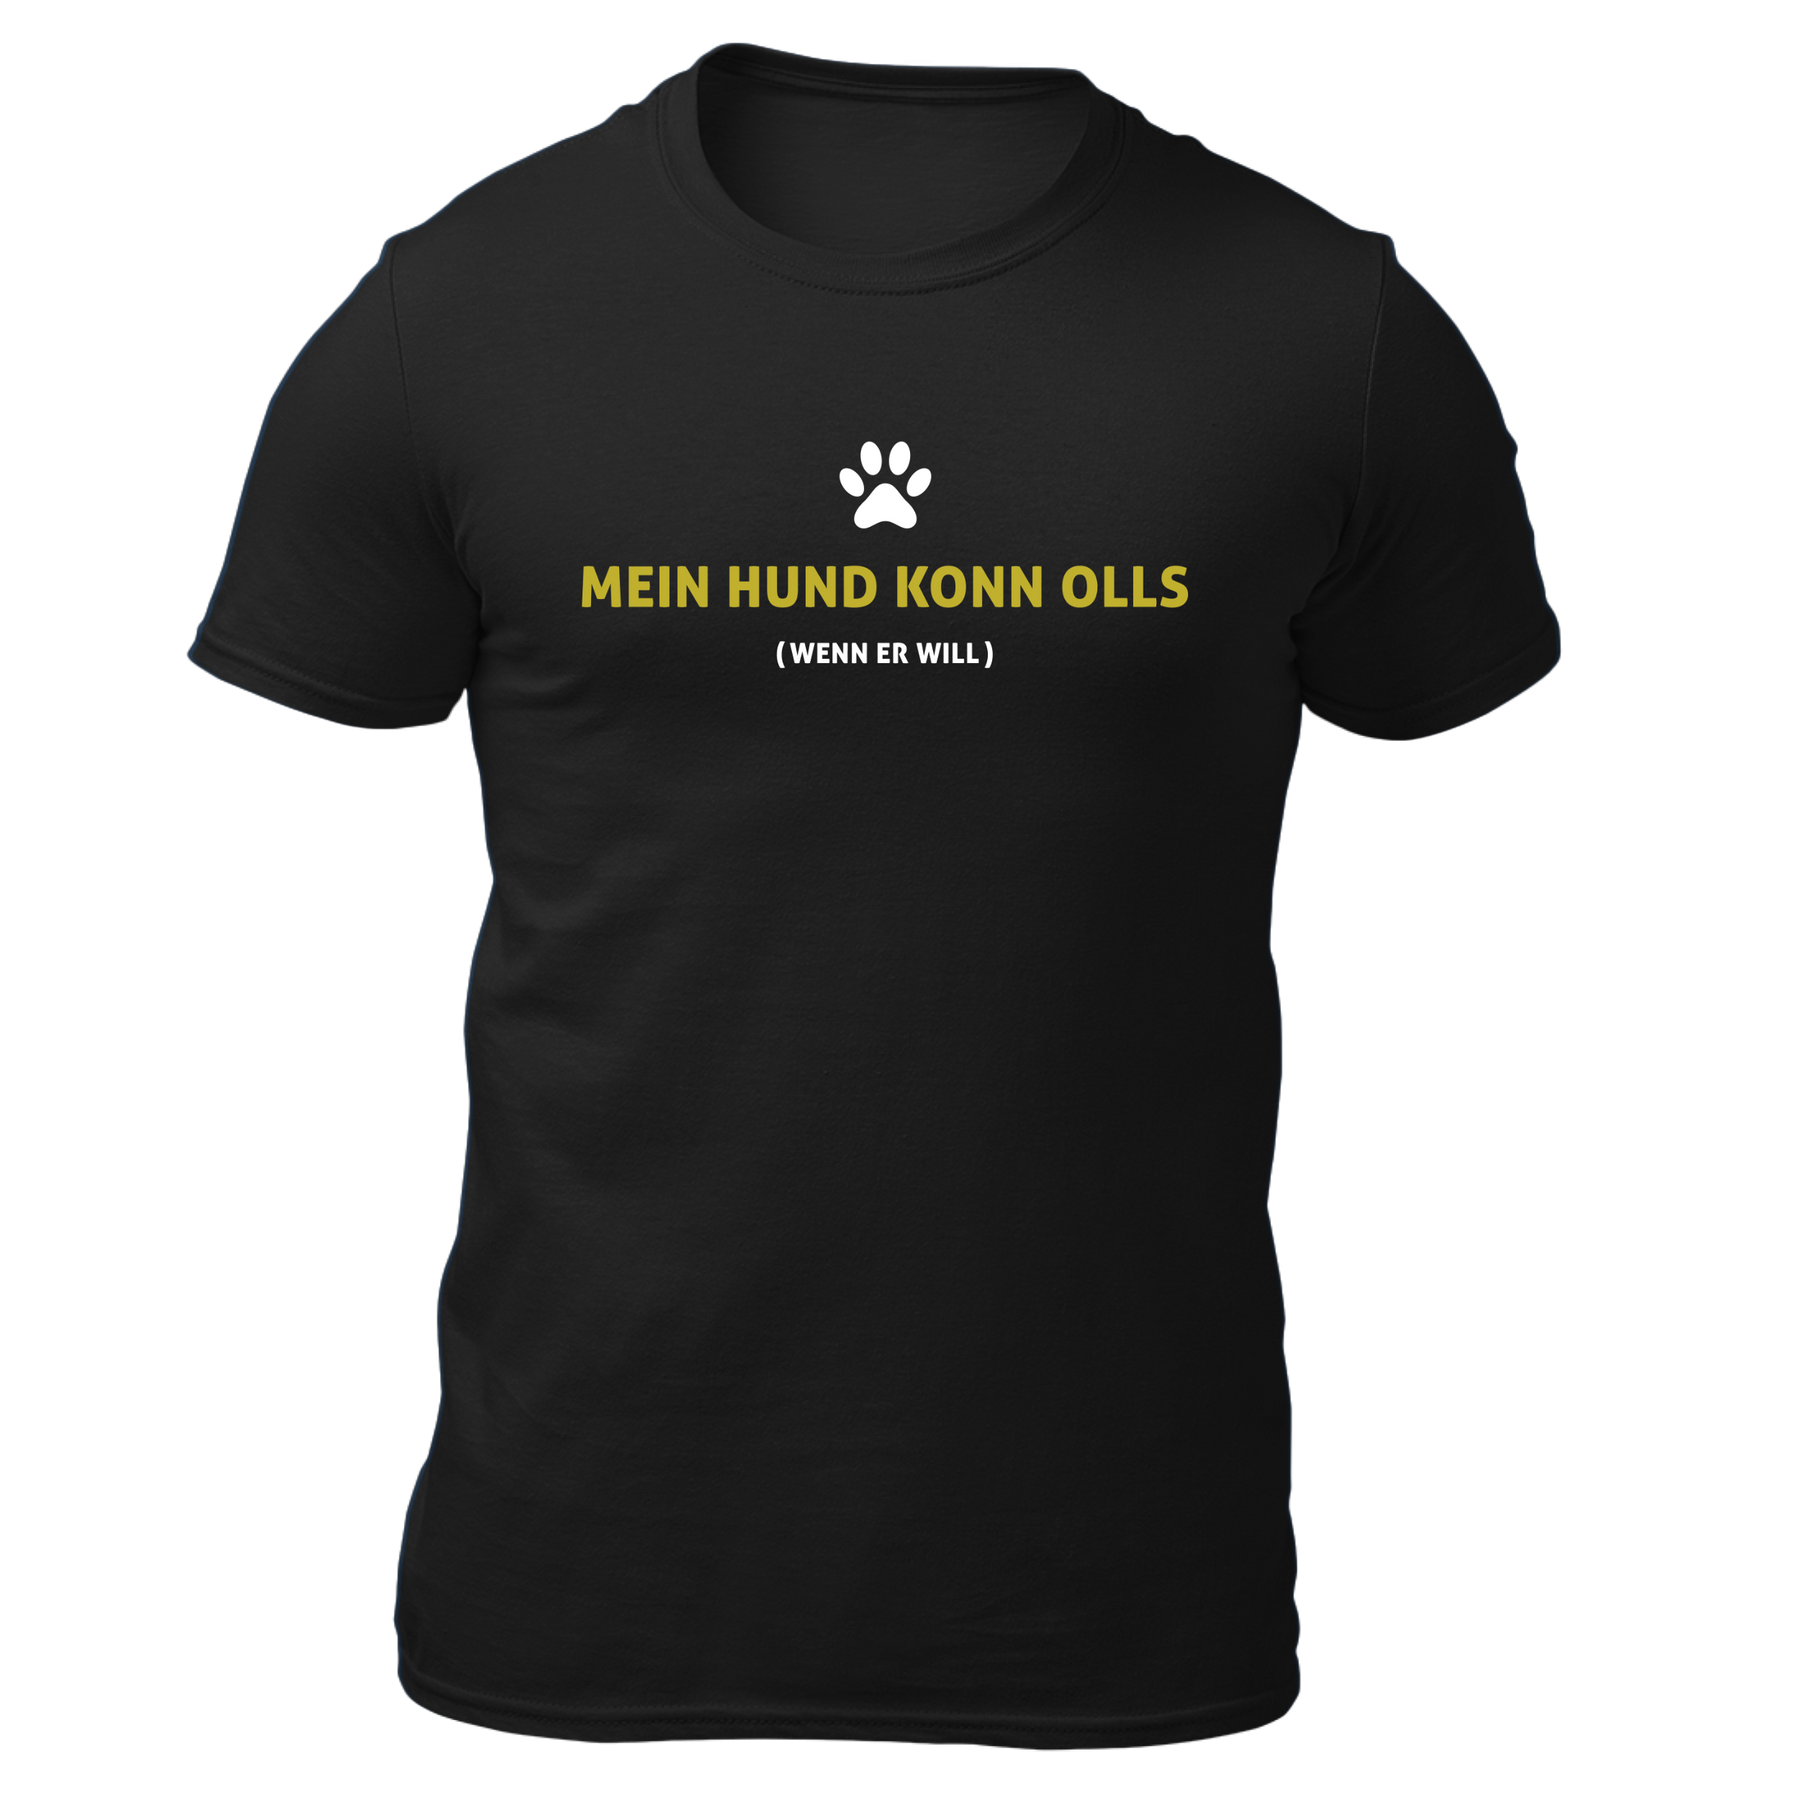 Mein Hund konn olls - Herren Shirt Bio - Schwarz / S - Shirts & Tops